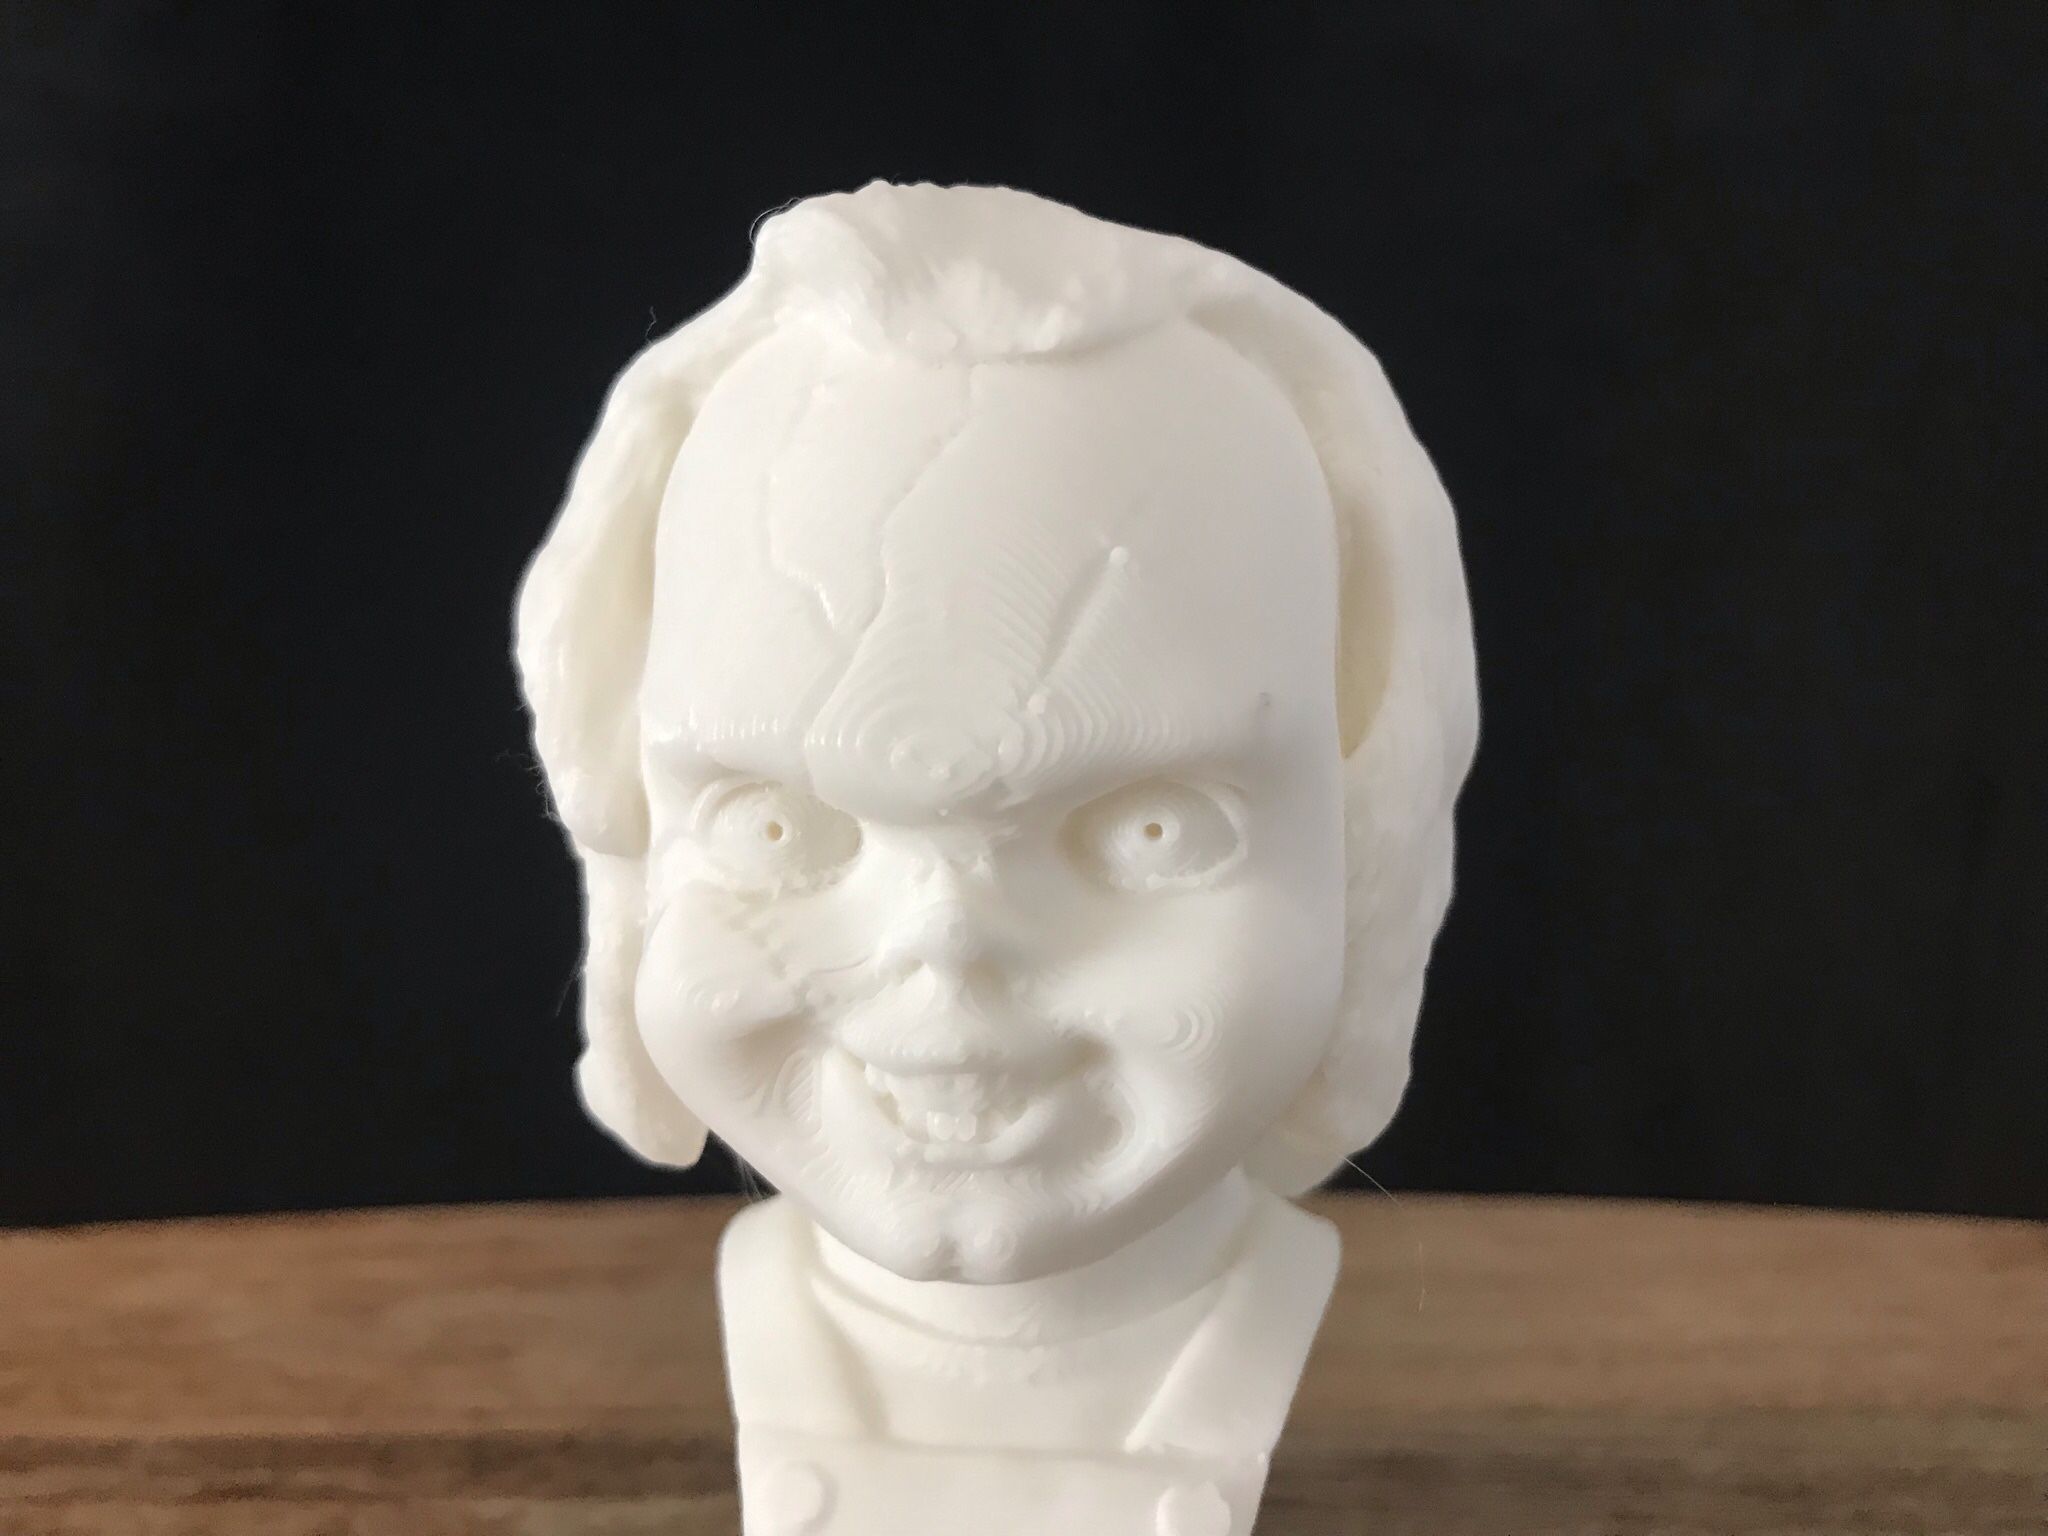 Chucky Bust | Chucky Collectibles | Chucky toy | Chucky Figurine | Chucky statue | Bride of Chucky | Chucky Collectibles | Chucky Knick Knacks